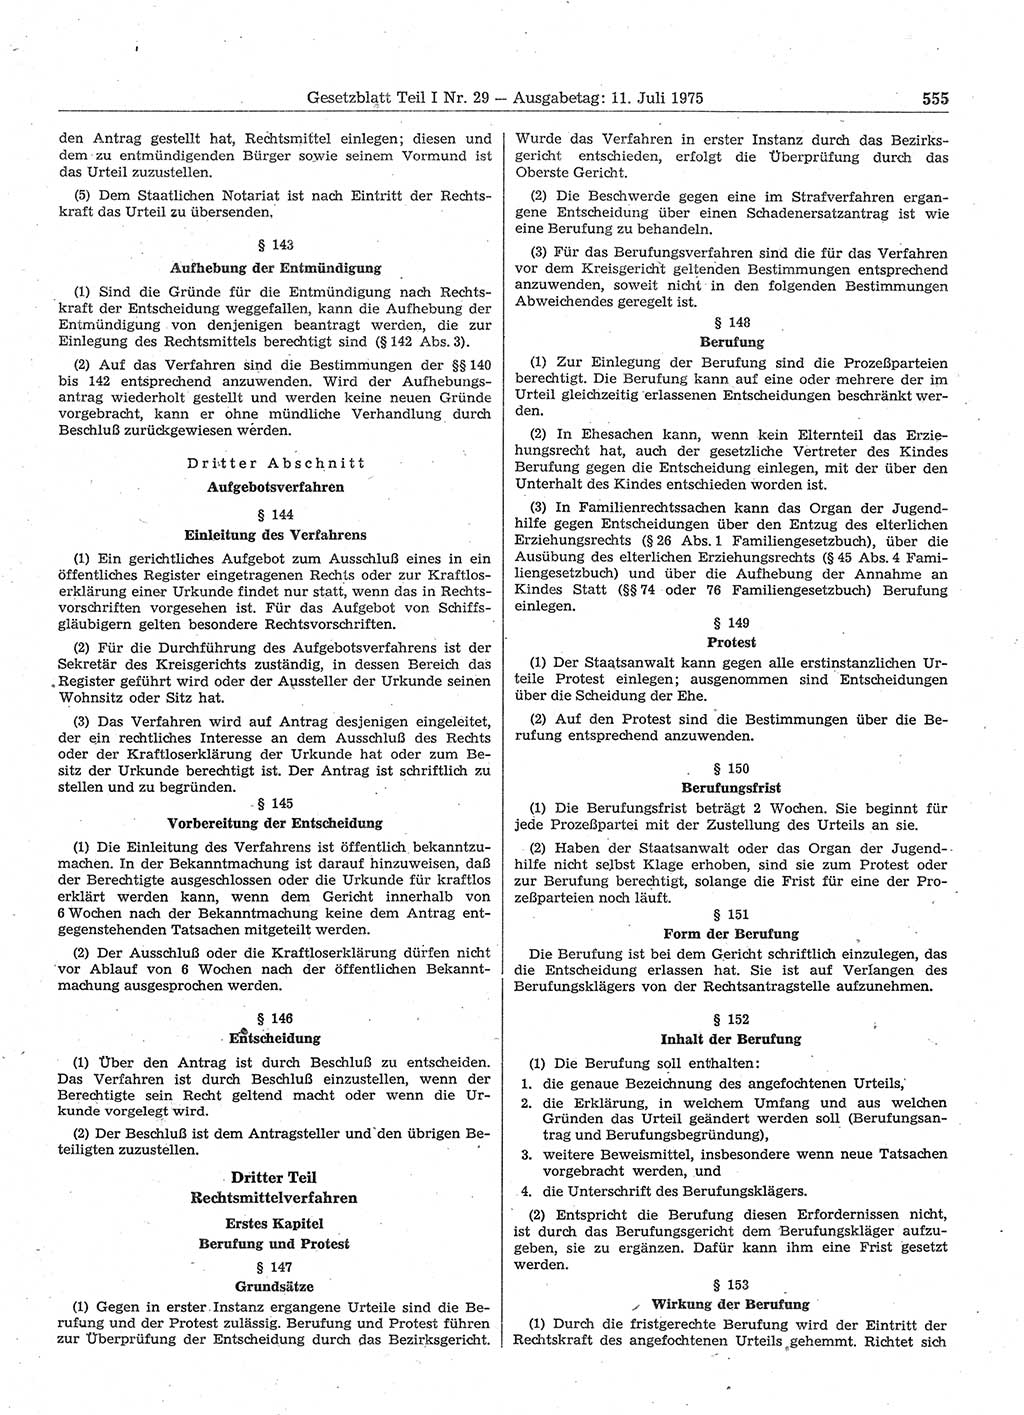 Gesetzblatt (GBl.) der Deutschen Demokratischen Republik (DDR) Teil Ⅰ 1975, Seite 555 (GBl. DDR Ⅰ 1975, S. 555)